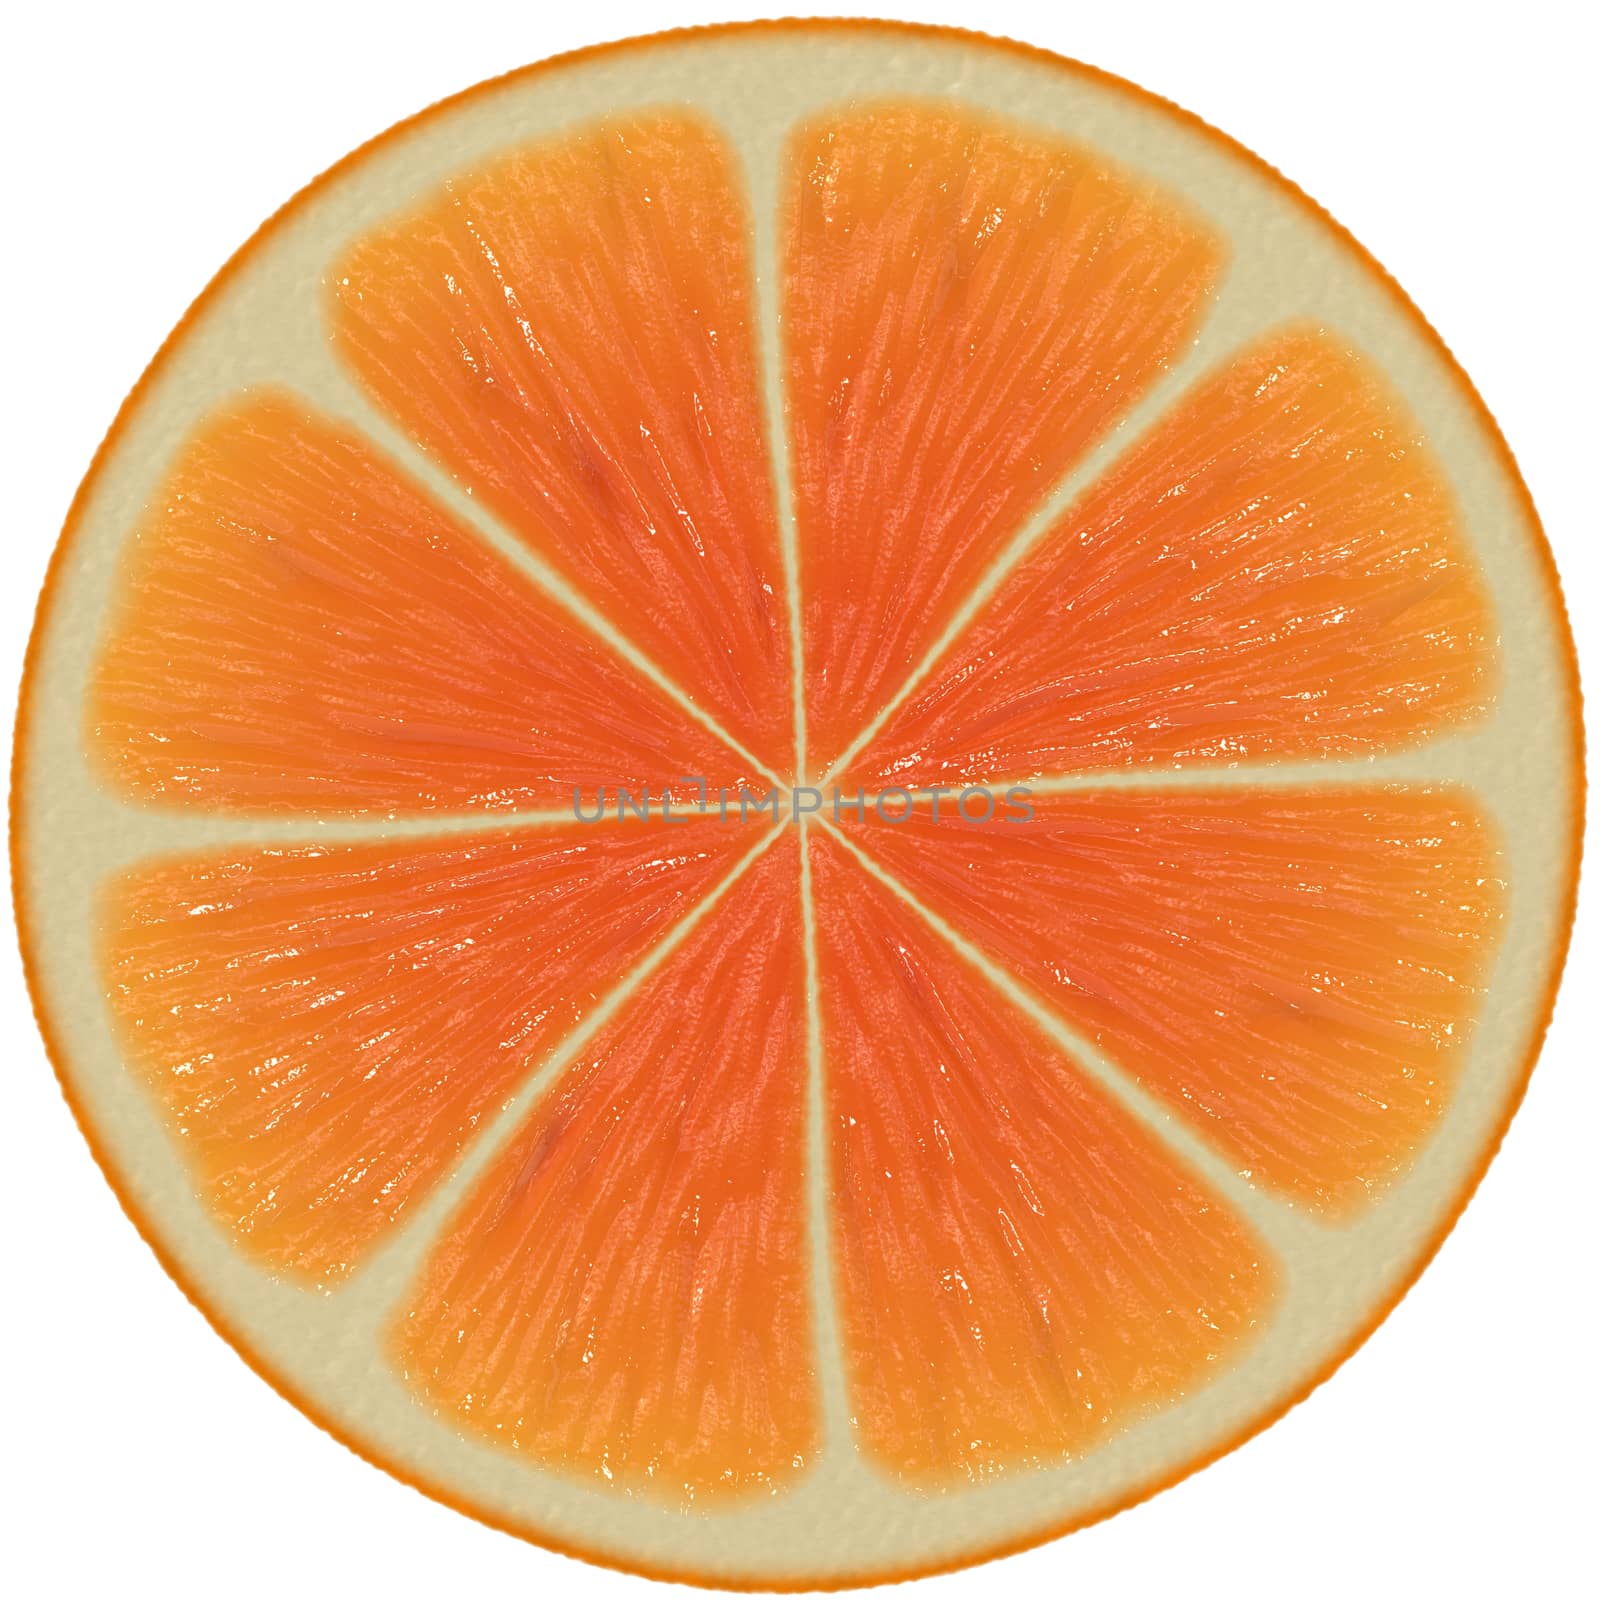 Sliced orange isolated on white background